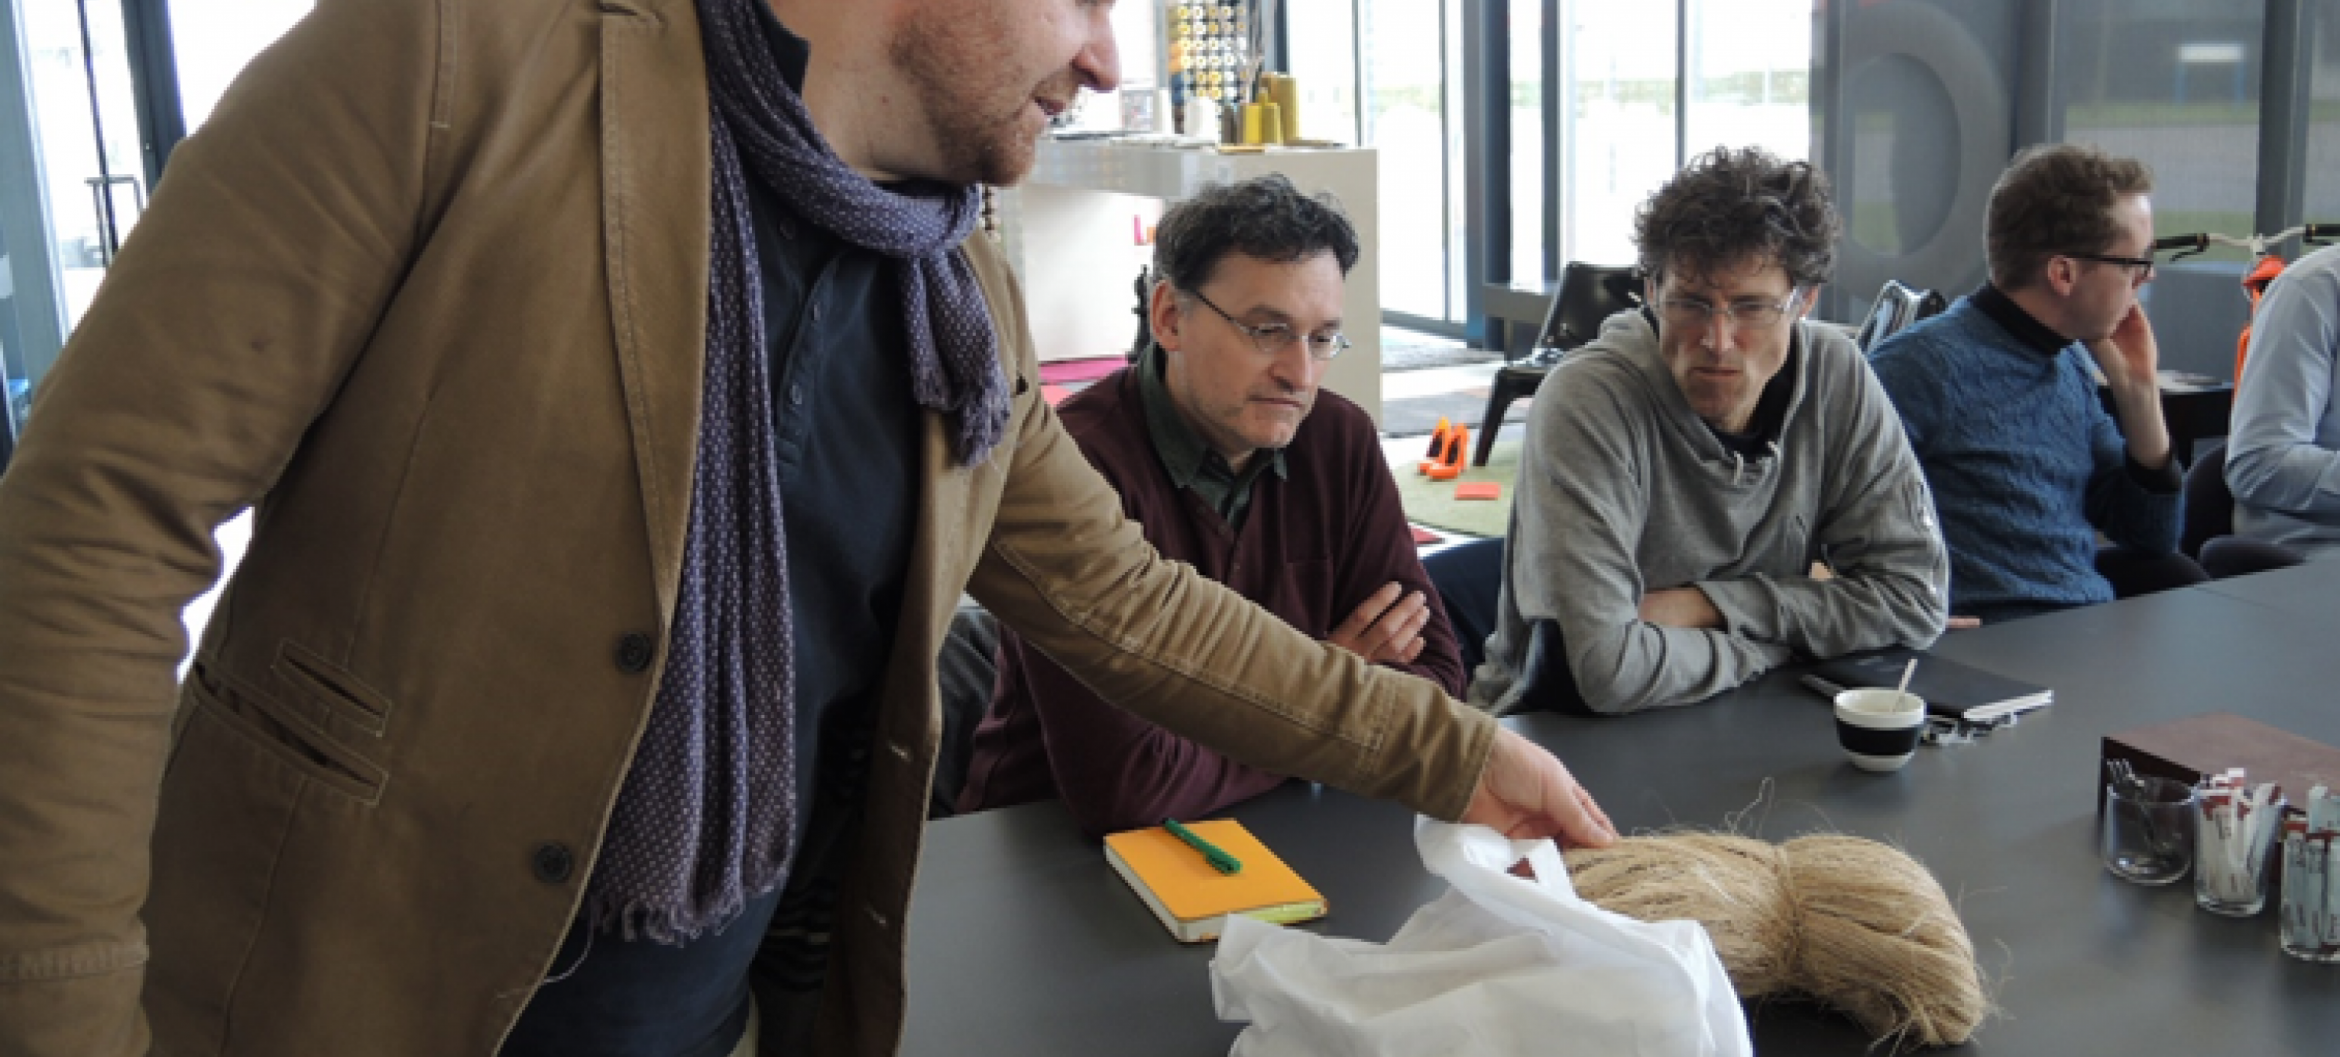 Ontwerper-onderzoeker Tjeerd Veenhoven, lector Jeroen van den Eijnde en ontwerpers op bedrijfsbezoek voor het project Composing the New Carpet